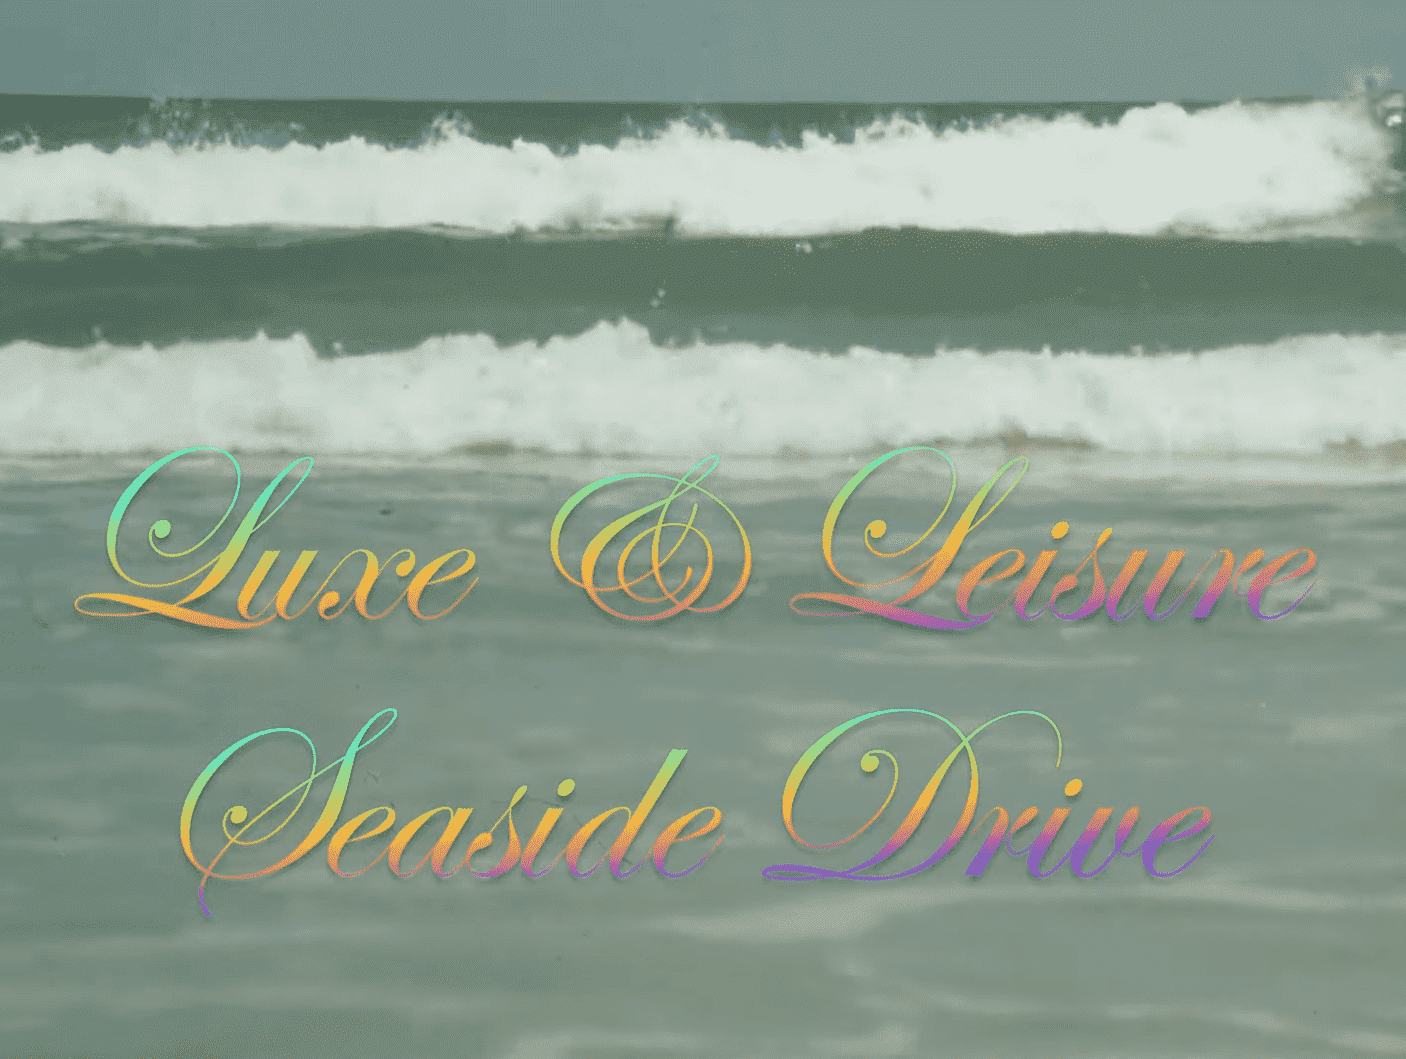 Luxe & Leisure: Seaside Drive